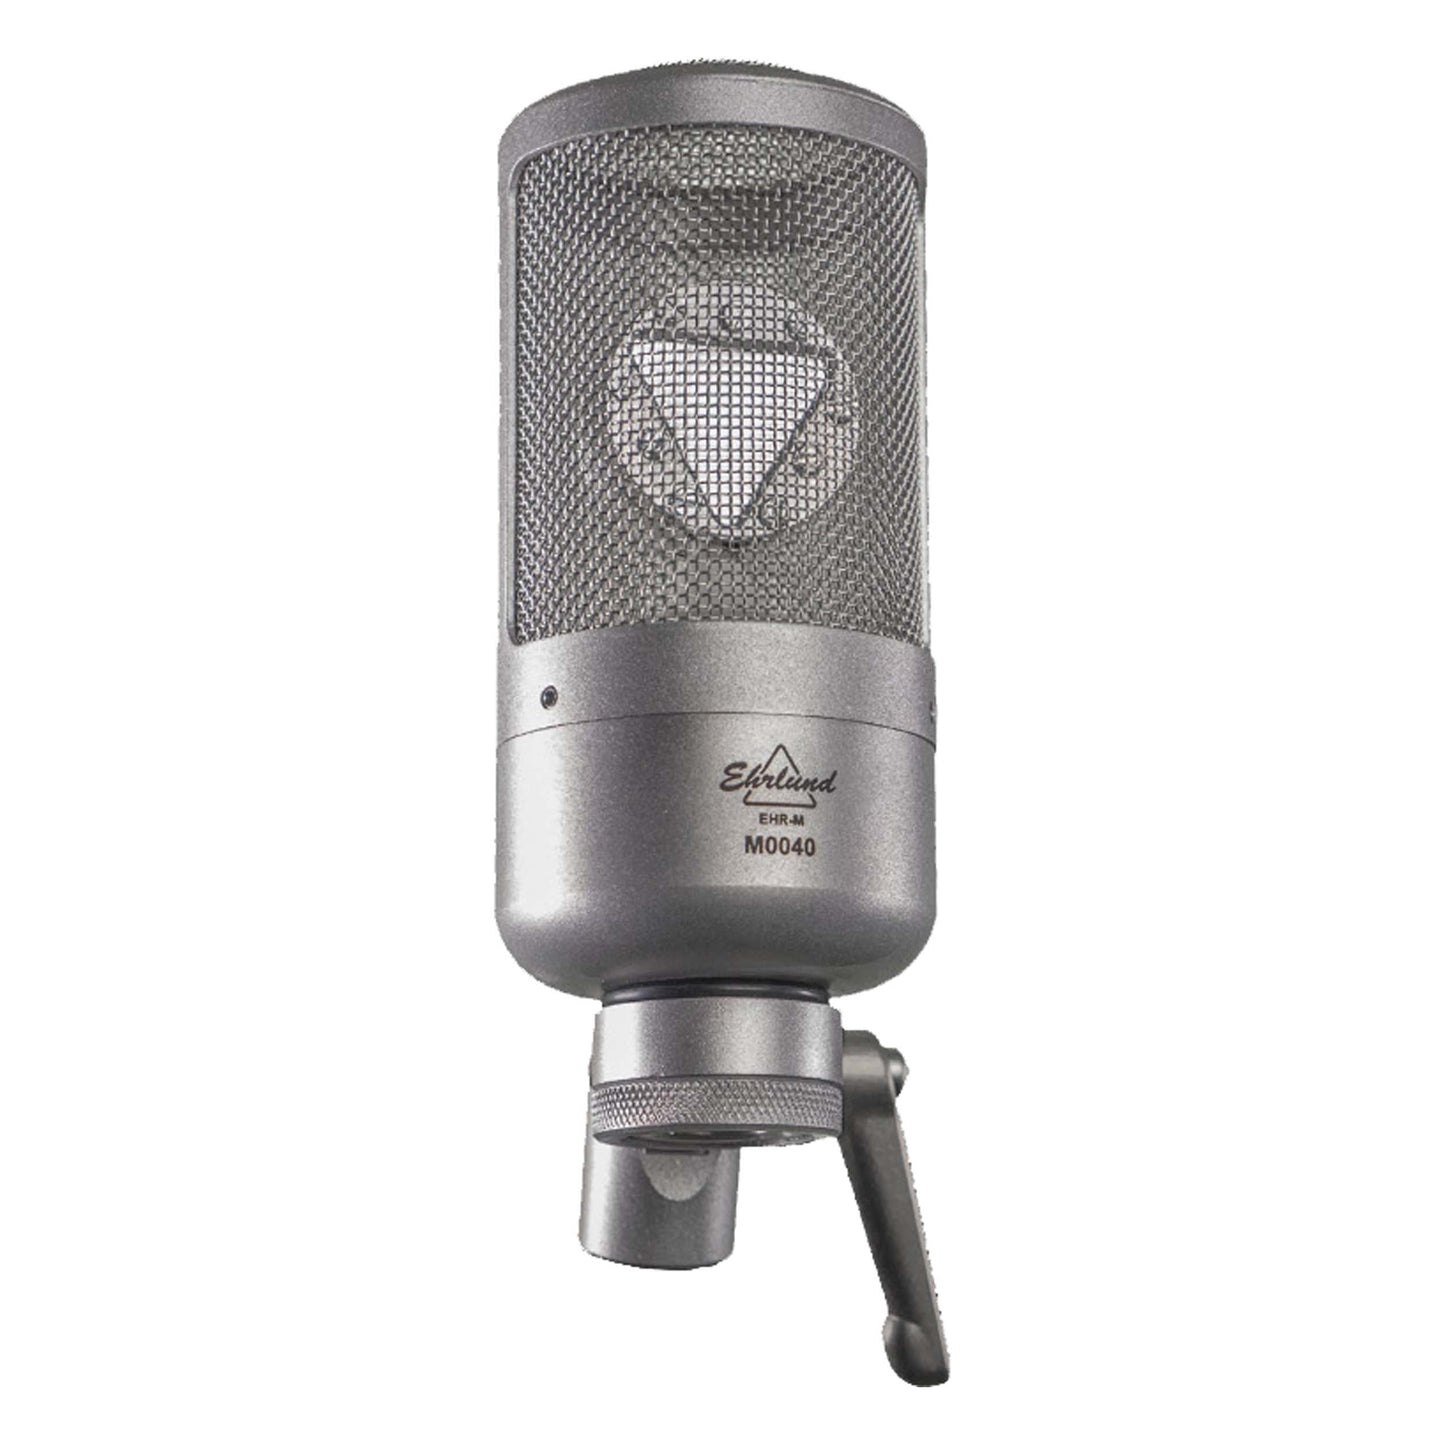 Ehrlund EHR-M Large Diaphragm Condenser Cardioid Microphone